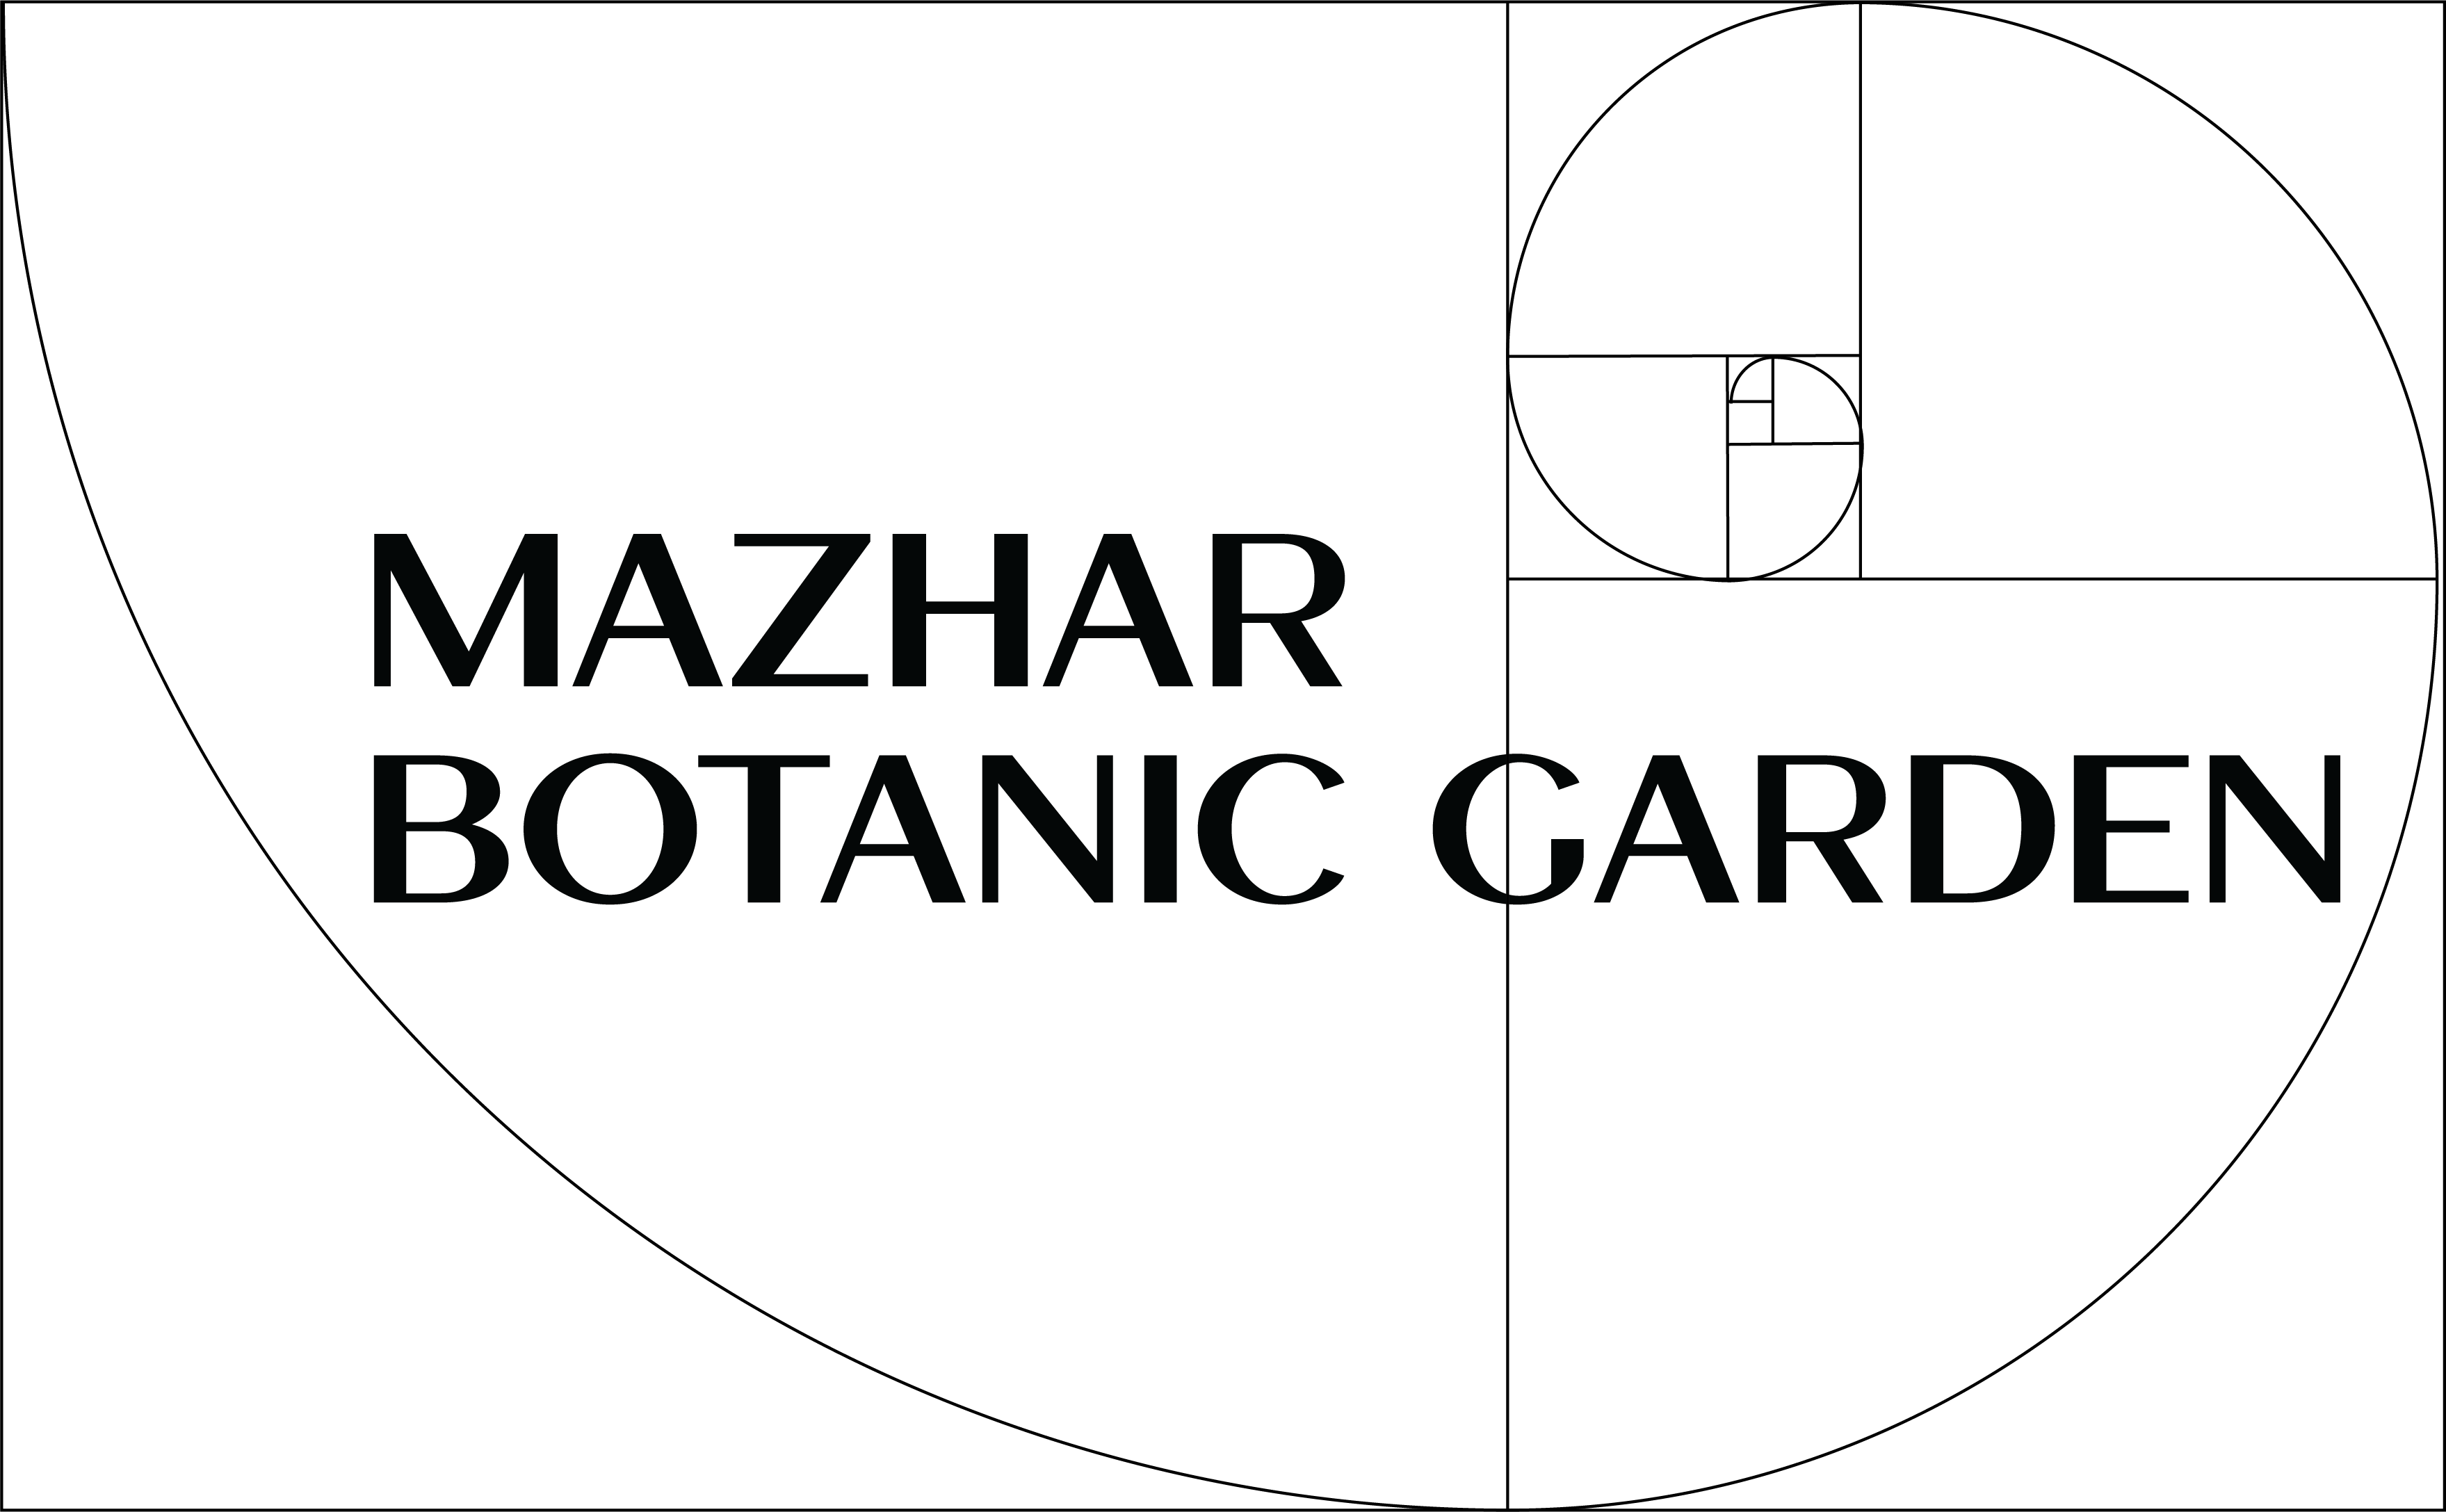 Mazhar Botanic Garden image